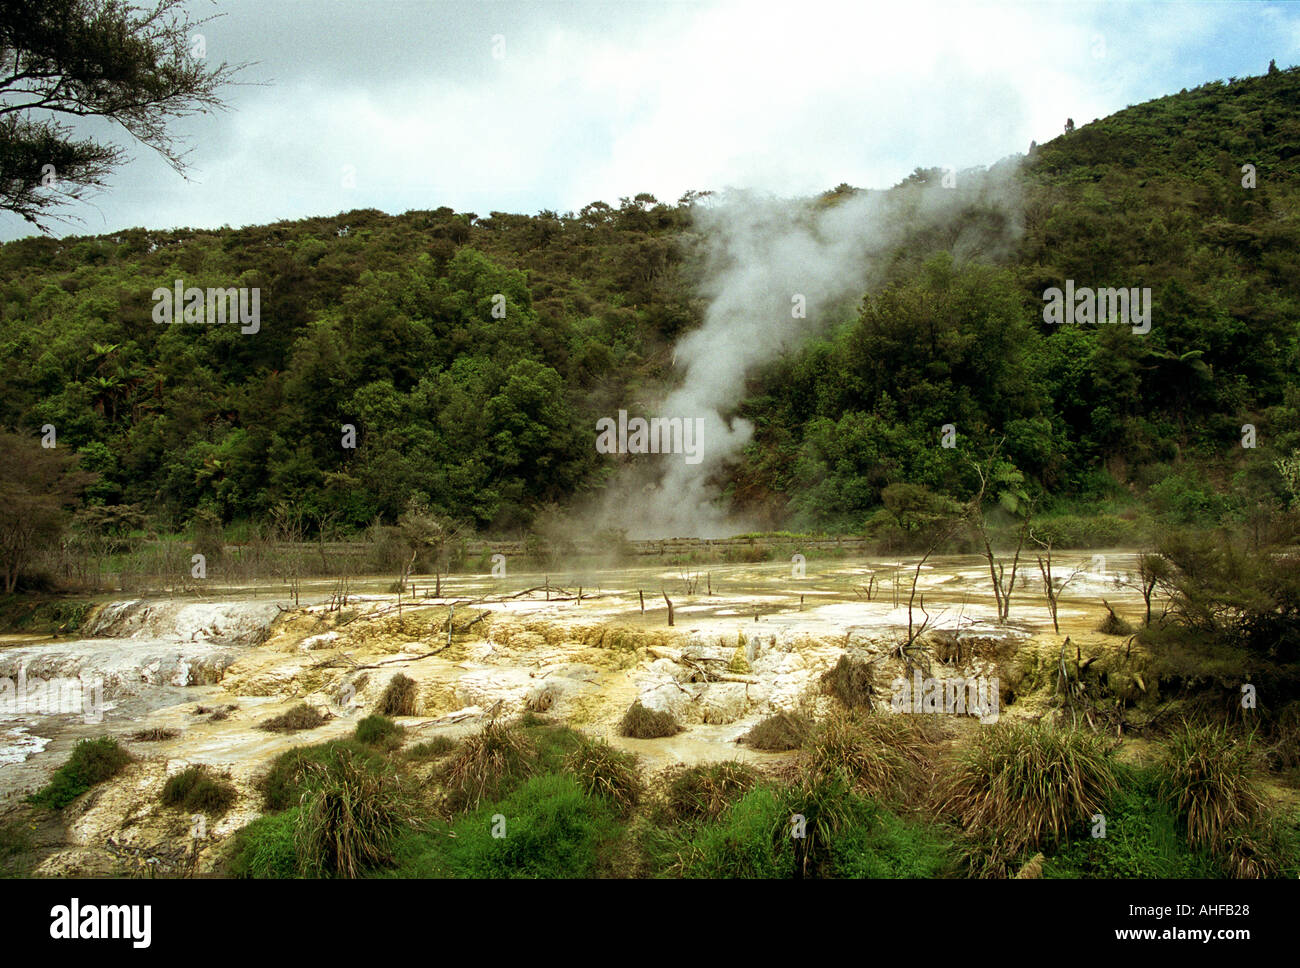 New Zealand 2003 la vallée volcanique de Waimangu une zone de production de vapeur de cratères et de fumeroles forment la base de cette célèbre sont géothermiques Banque D'Images